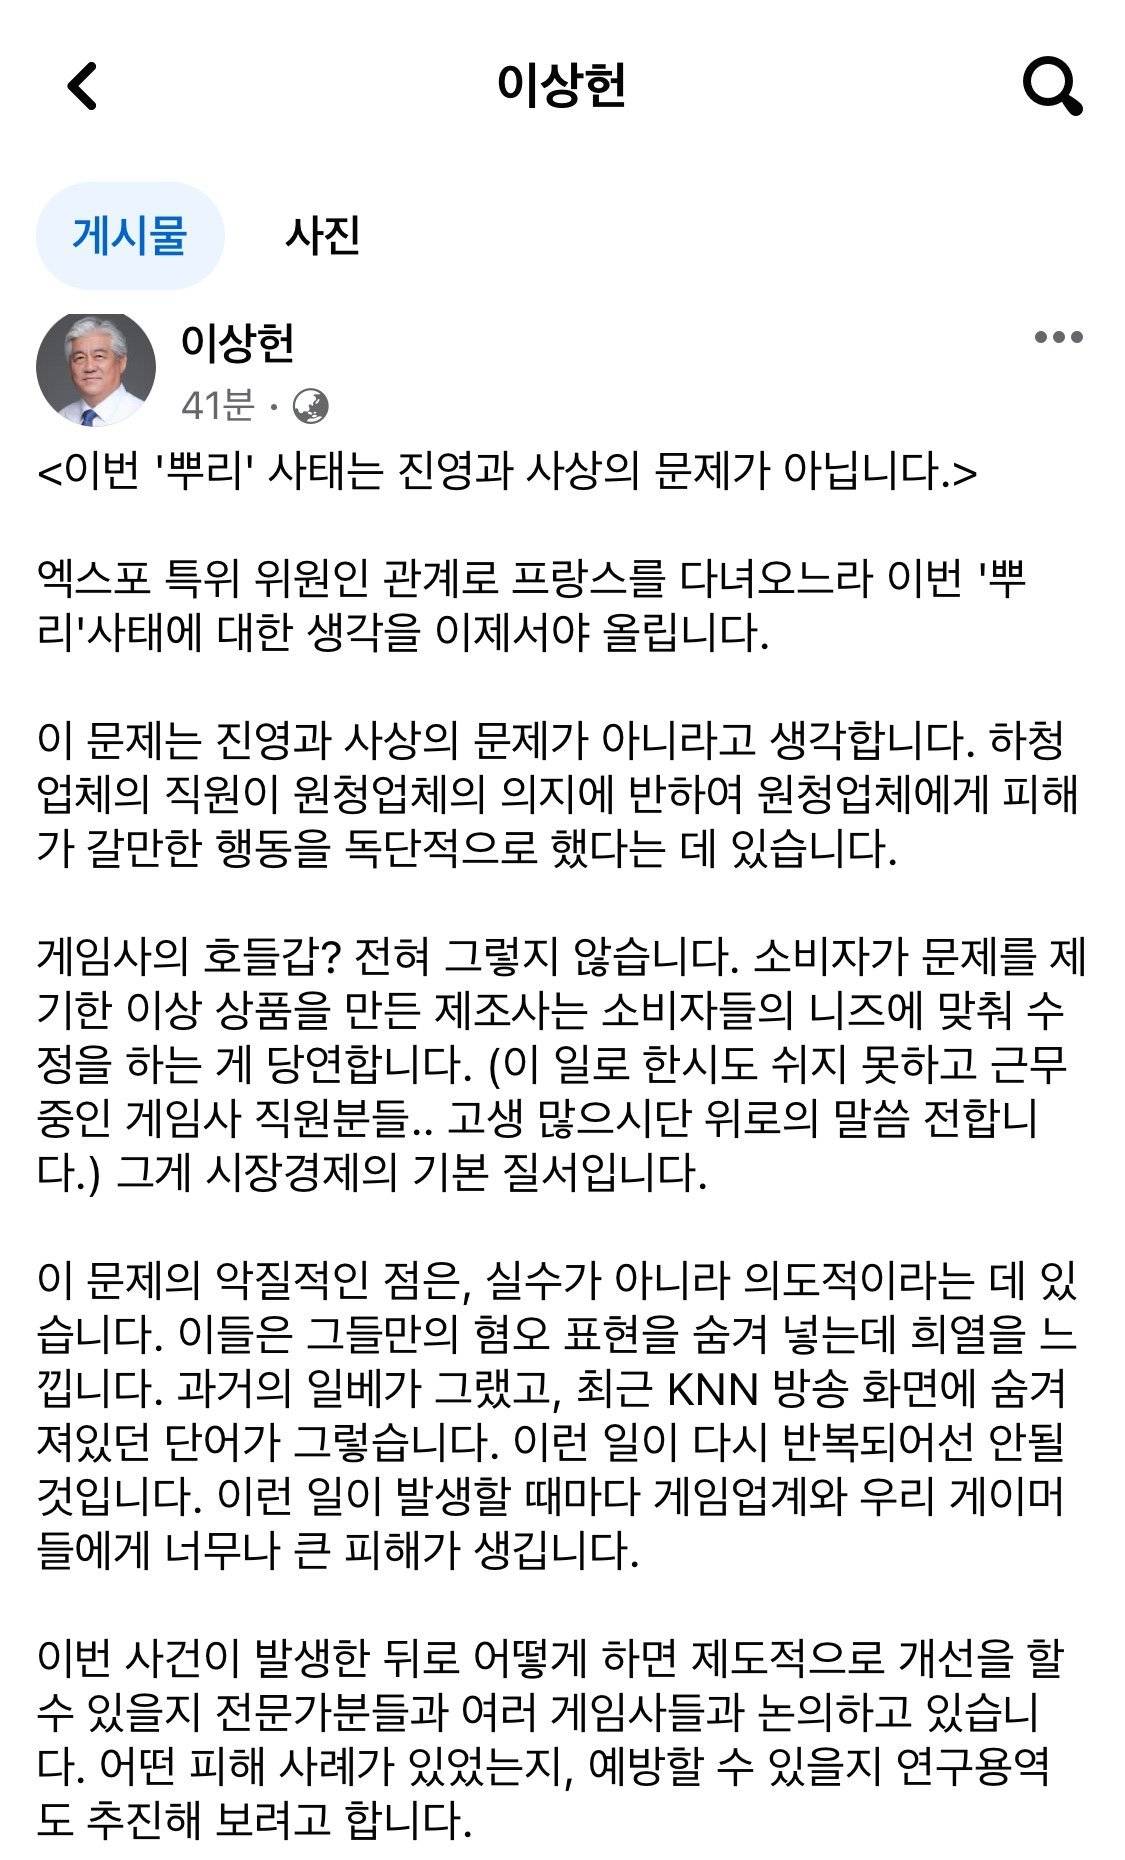 국회의원 이상헌 (뿌리 사태 언급)